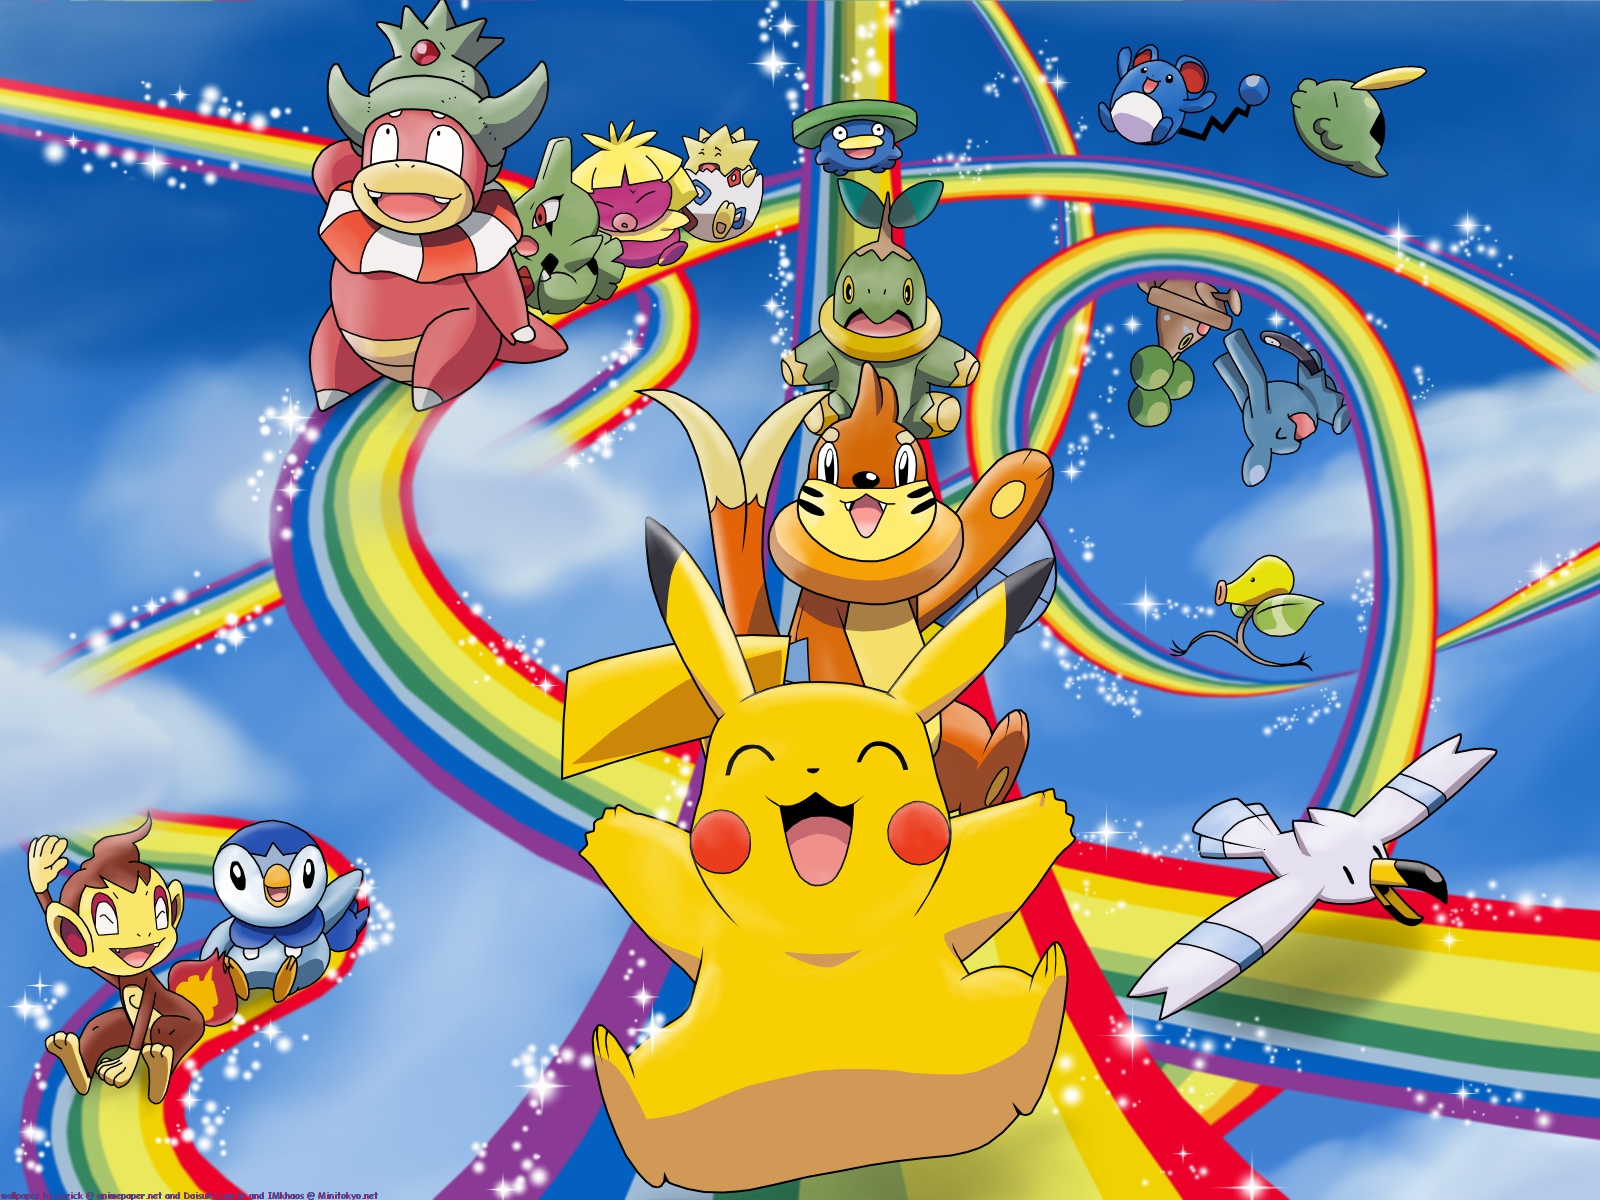 Rumor: Pokemon Rainbow to be announced